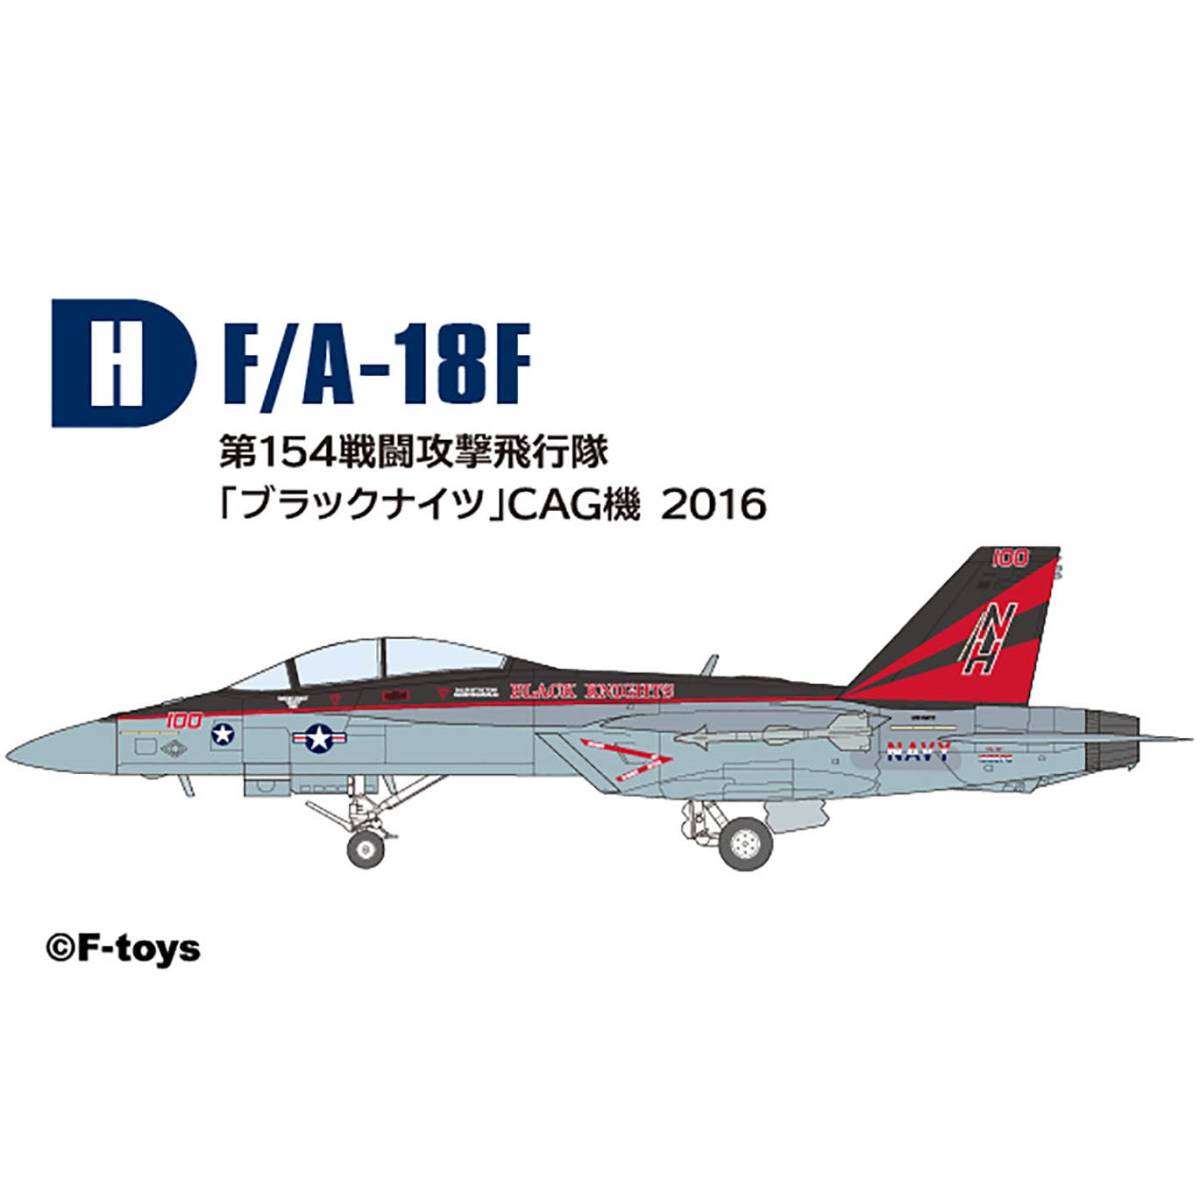 H　第154戦闘攻撃飛行隊 ブラックナイツ CAG機 2016 ハイスペック シリーズ 7 1/144 スーパーホーネットファミリー 2 エフトイズ F-toys_サンプル画像です 